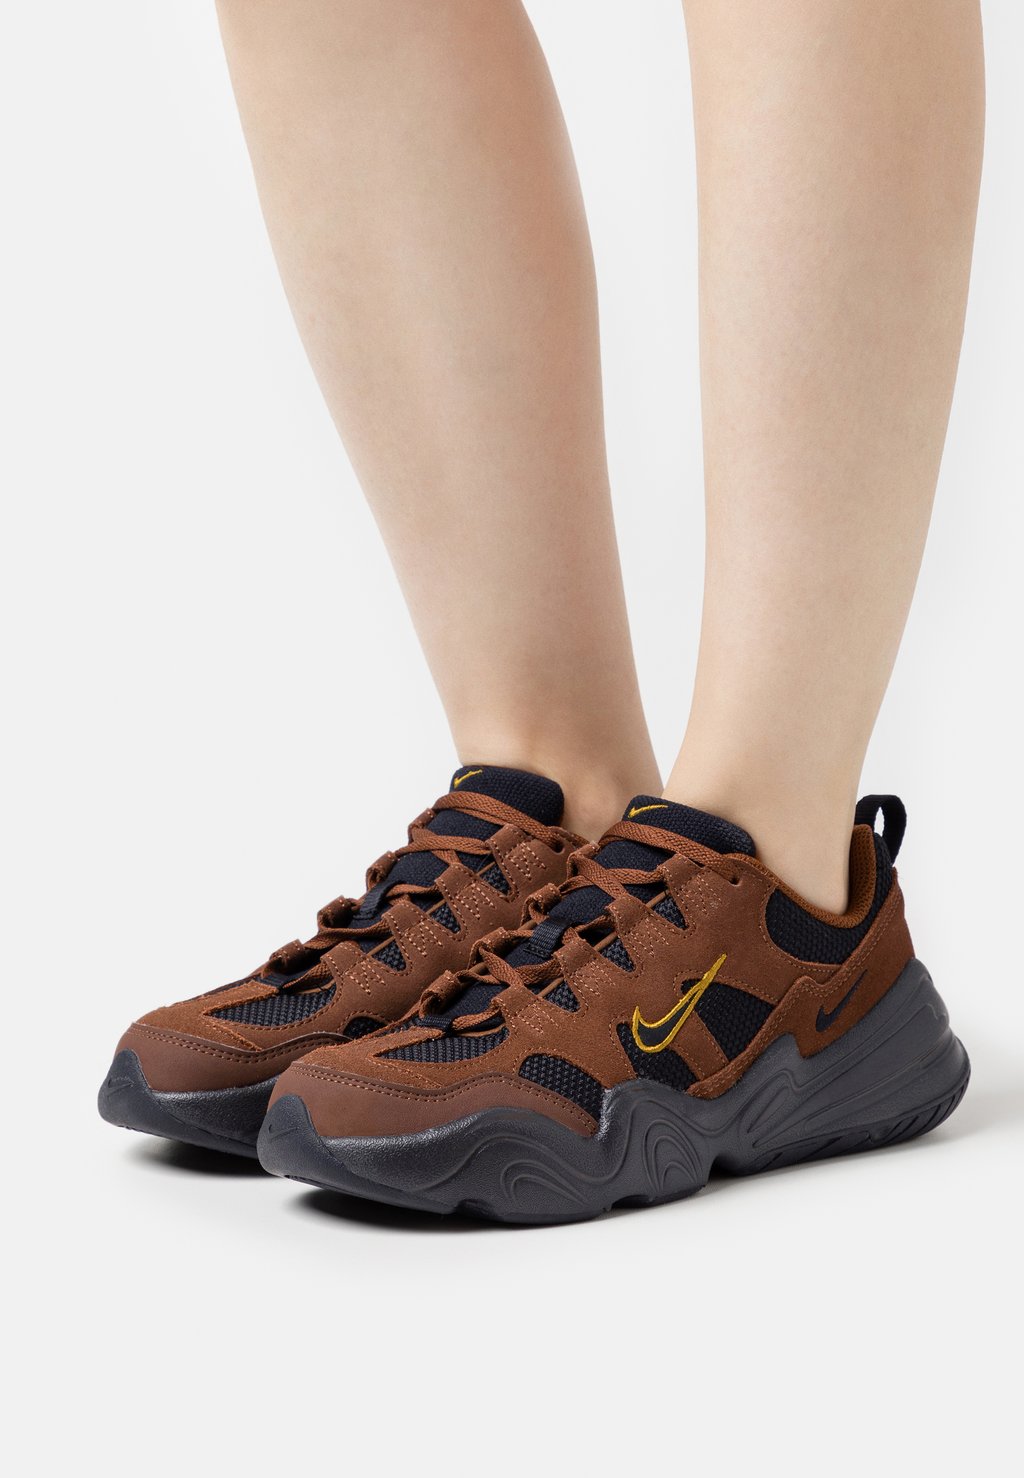 цена Низкие кроссовки W NIKE TECH HERA Nike, какао wow/черный/бронзовый